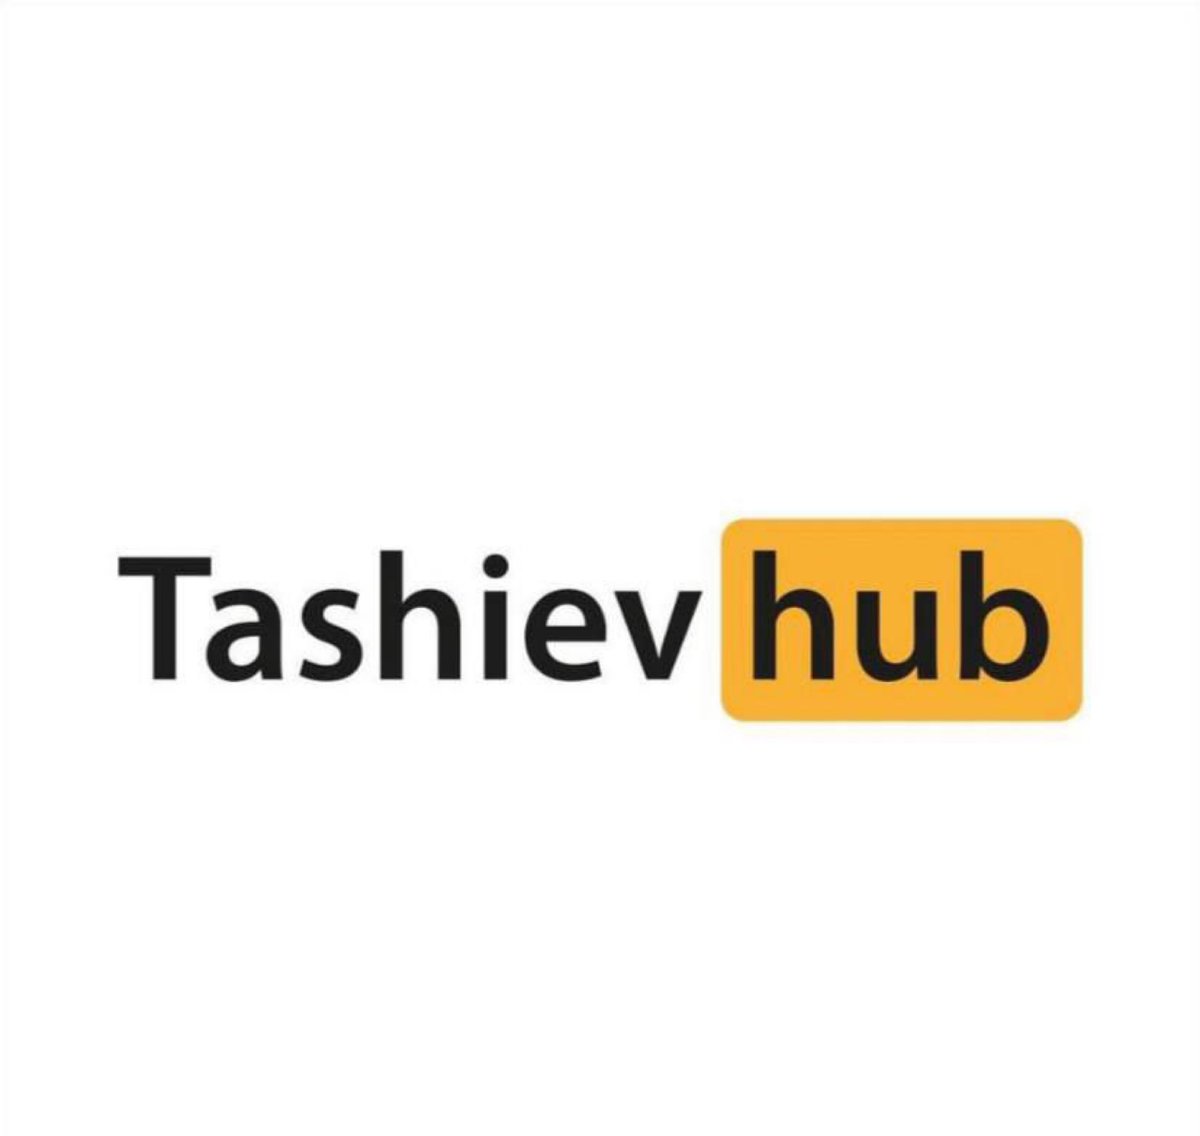 Pornhub подарит бесплатную пожизненную подписку всем сотрудникам ГКНБ.«Лучше смотрите порно на нашем ресурсе, чем заниматься такой подлой хуйнёй», — пожелала администрация Pornhub Камчыбеку Ташиеву 